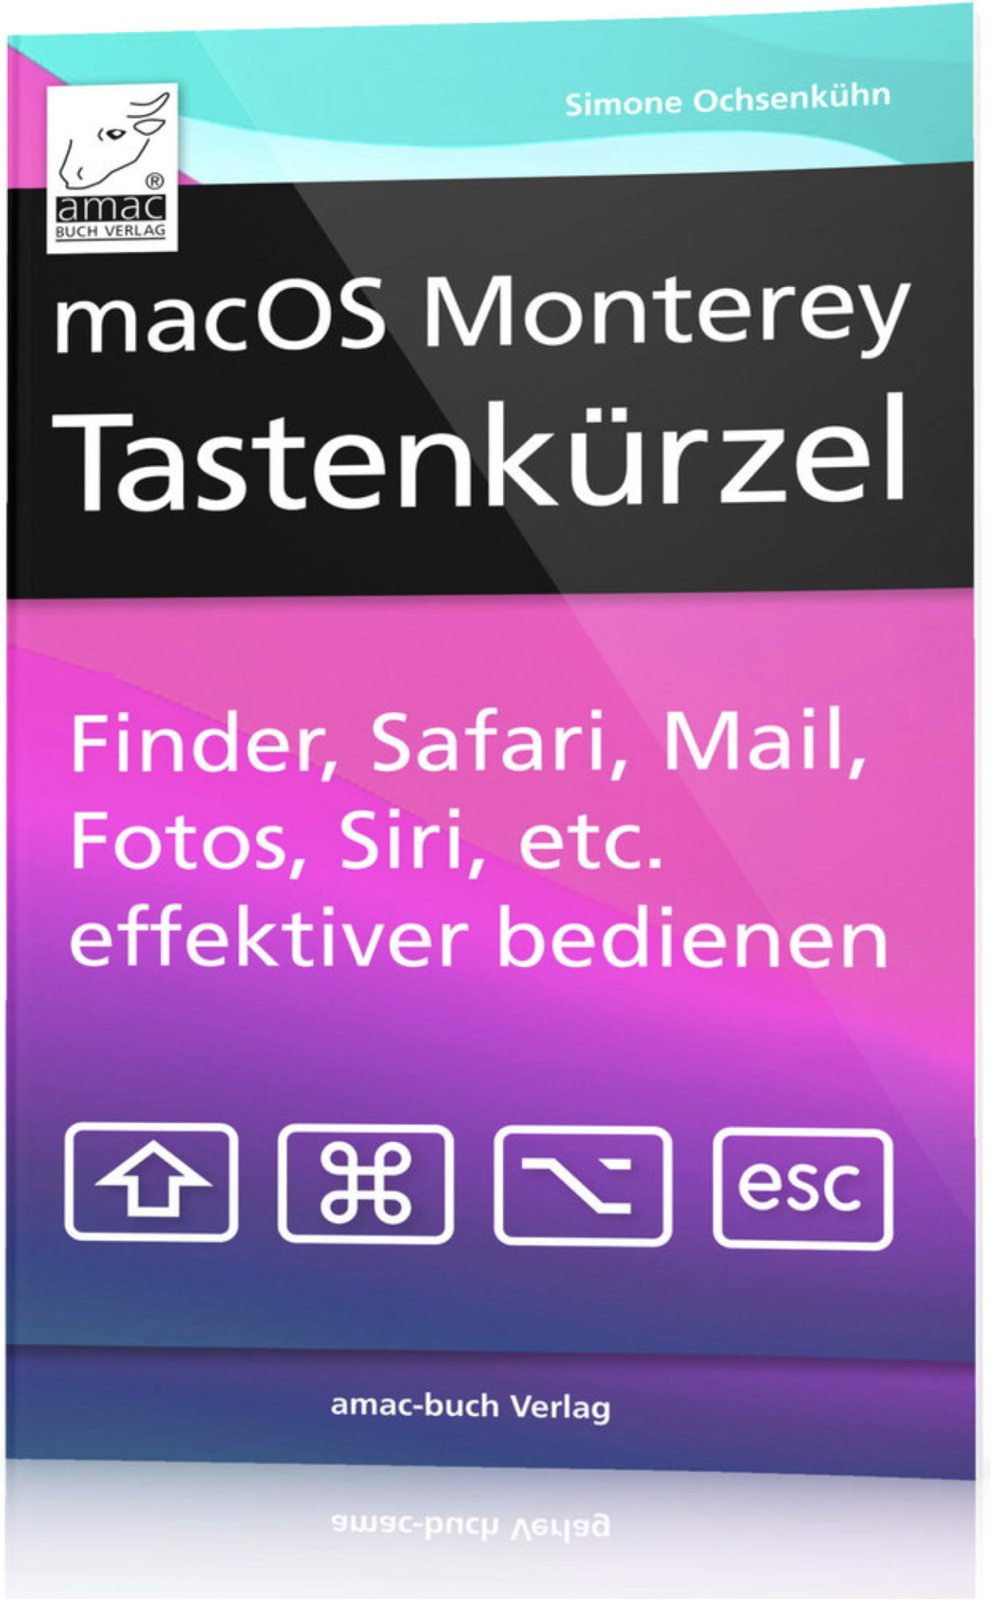 macOS-Monterey-Tastenkuerzel-D-Amac-Buchverlag-01.jpg